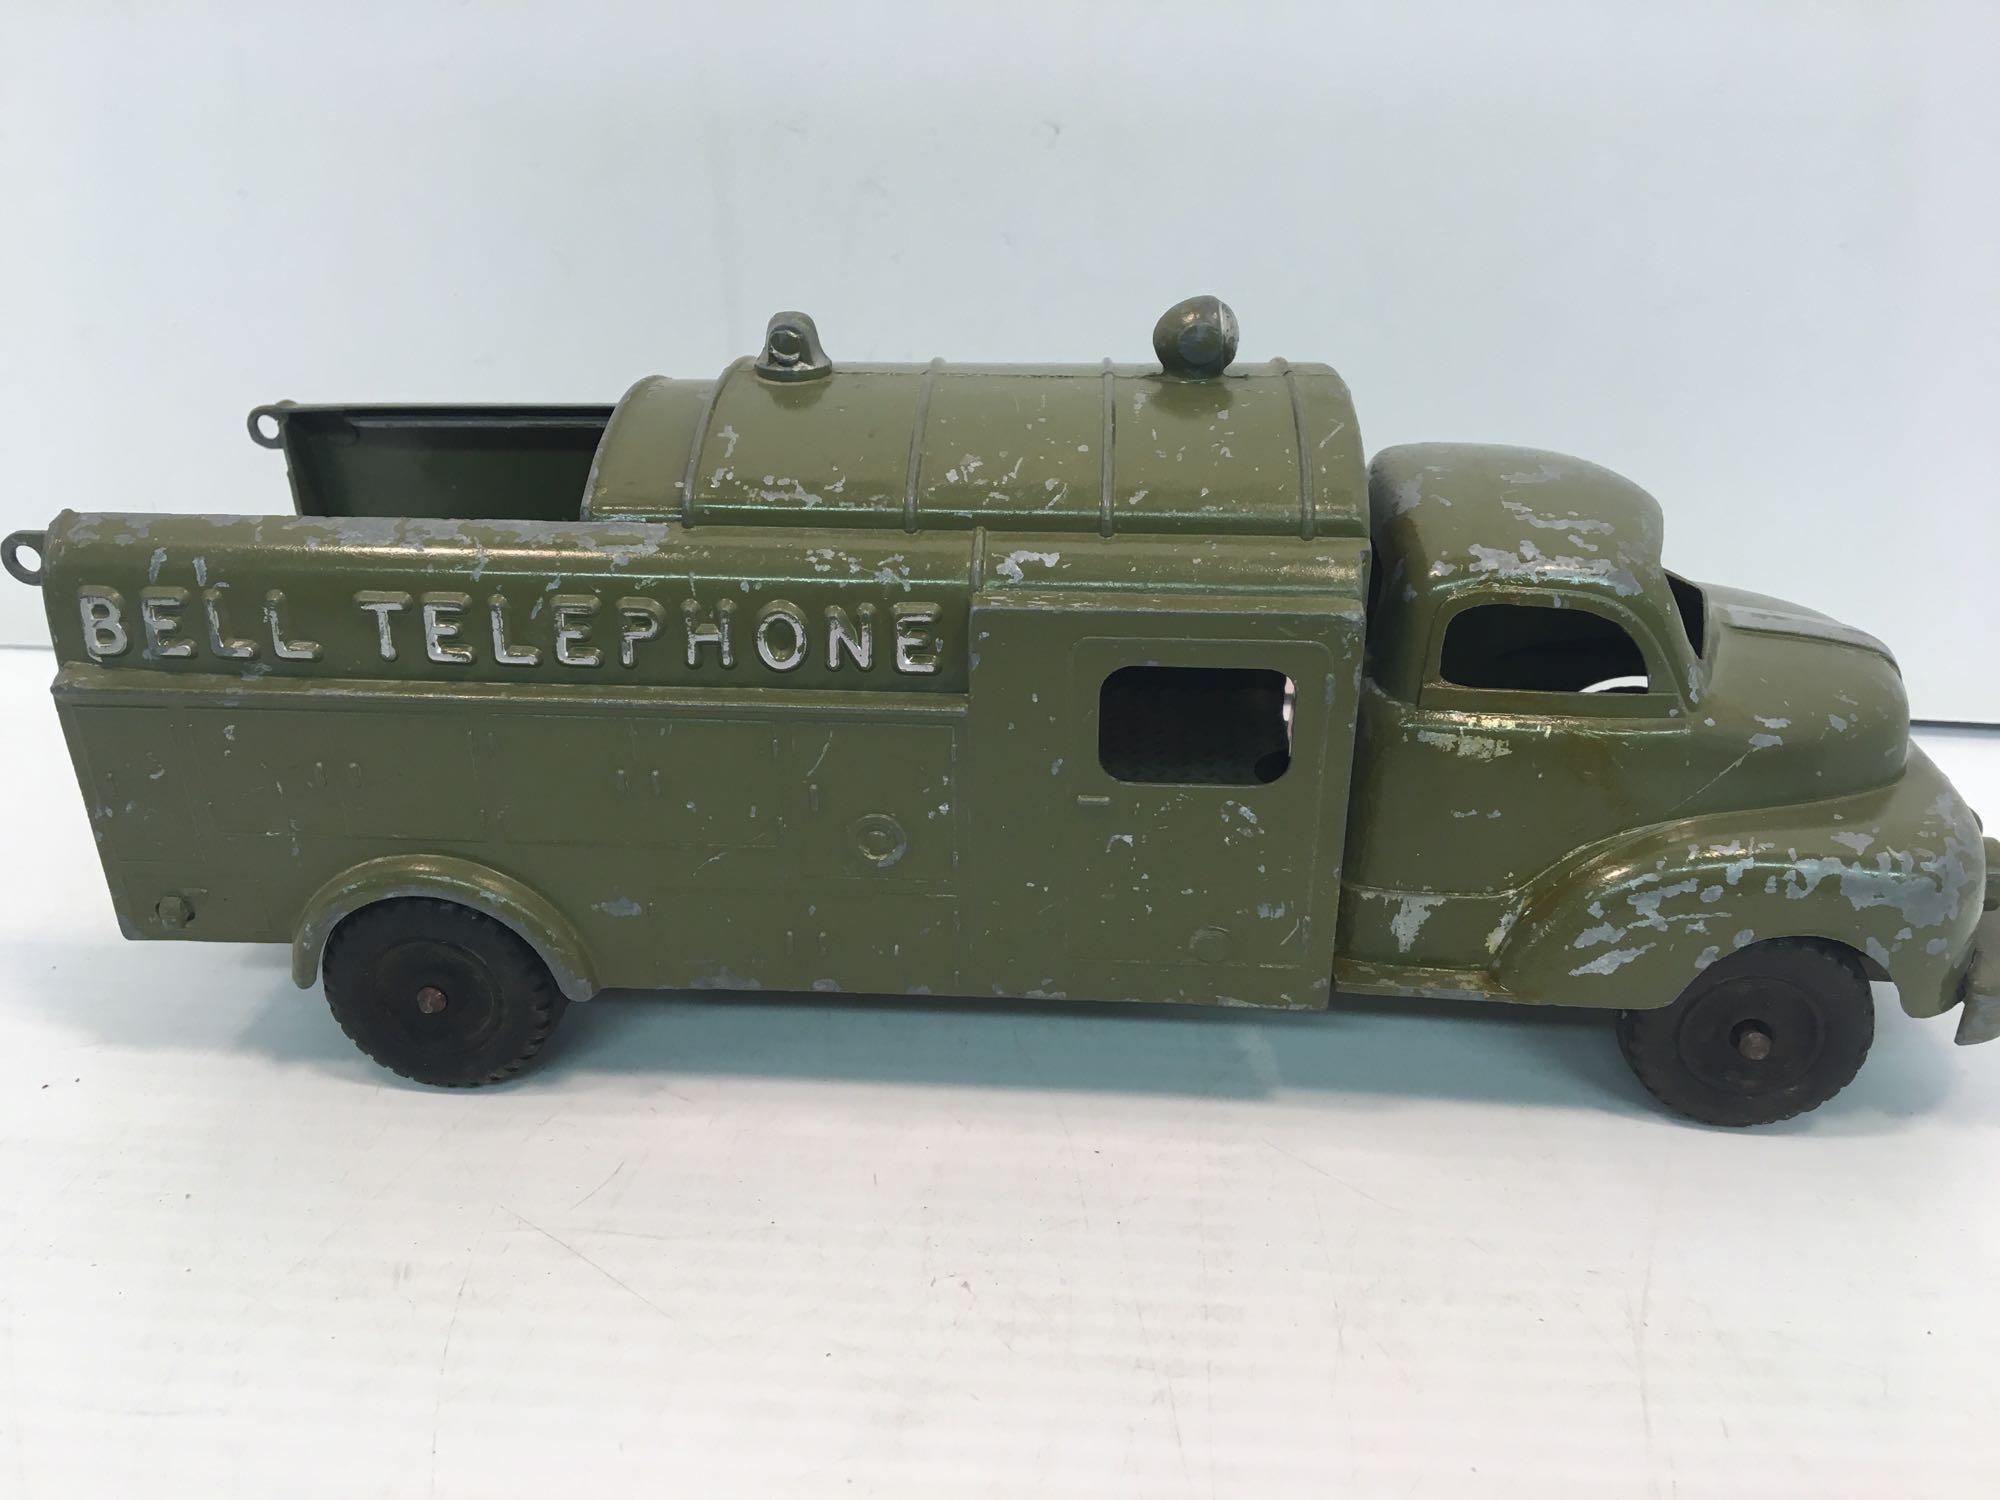 Vintage HUBLEY pressed metal BELL TELEPHONE truck